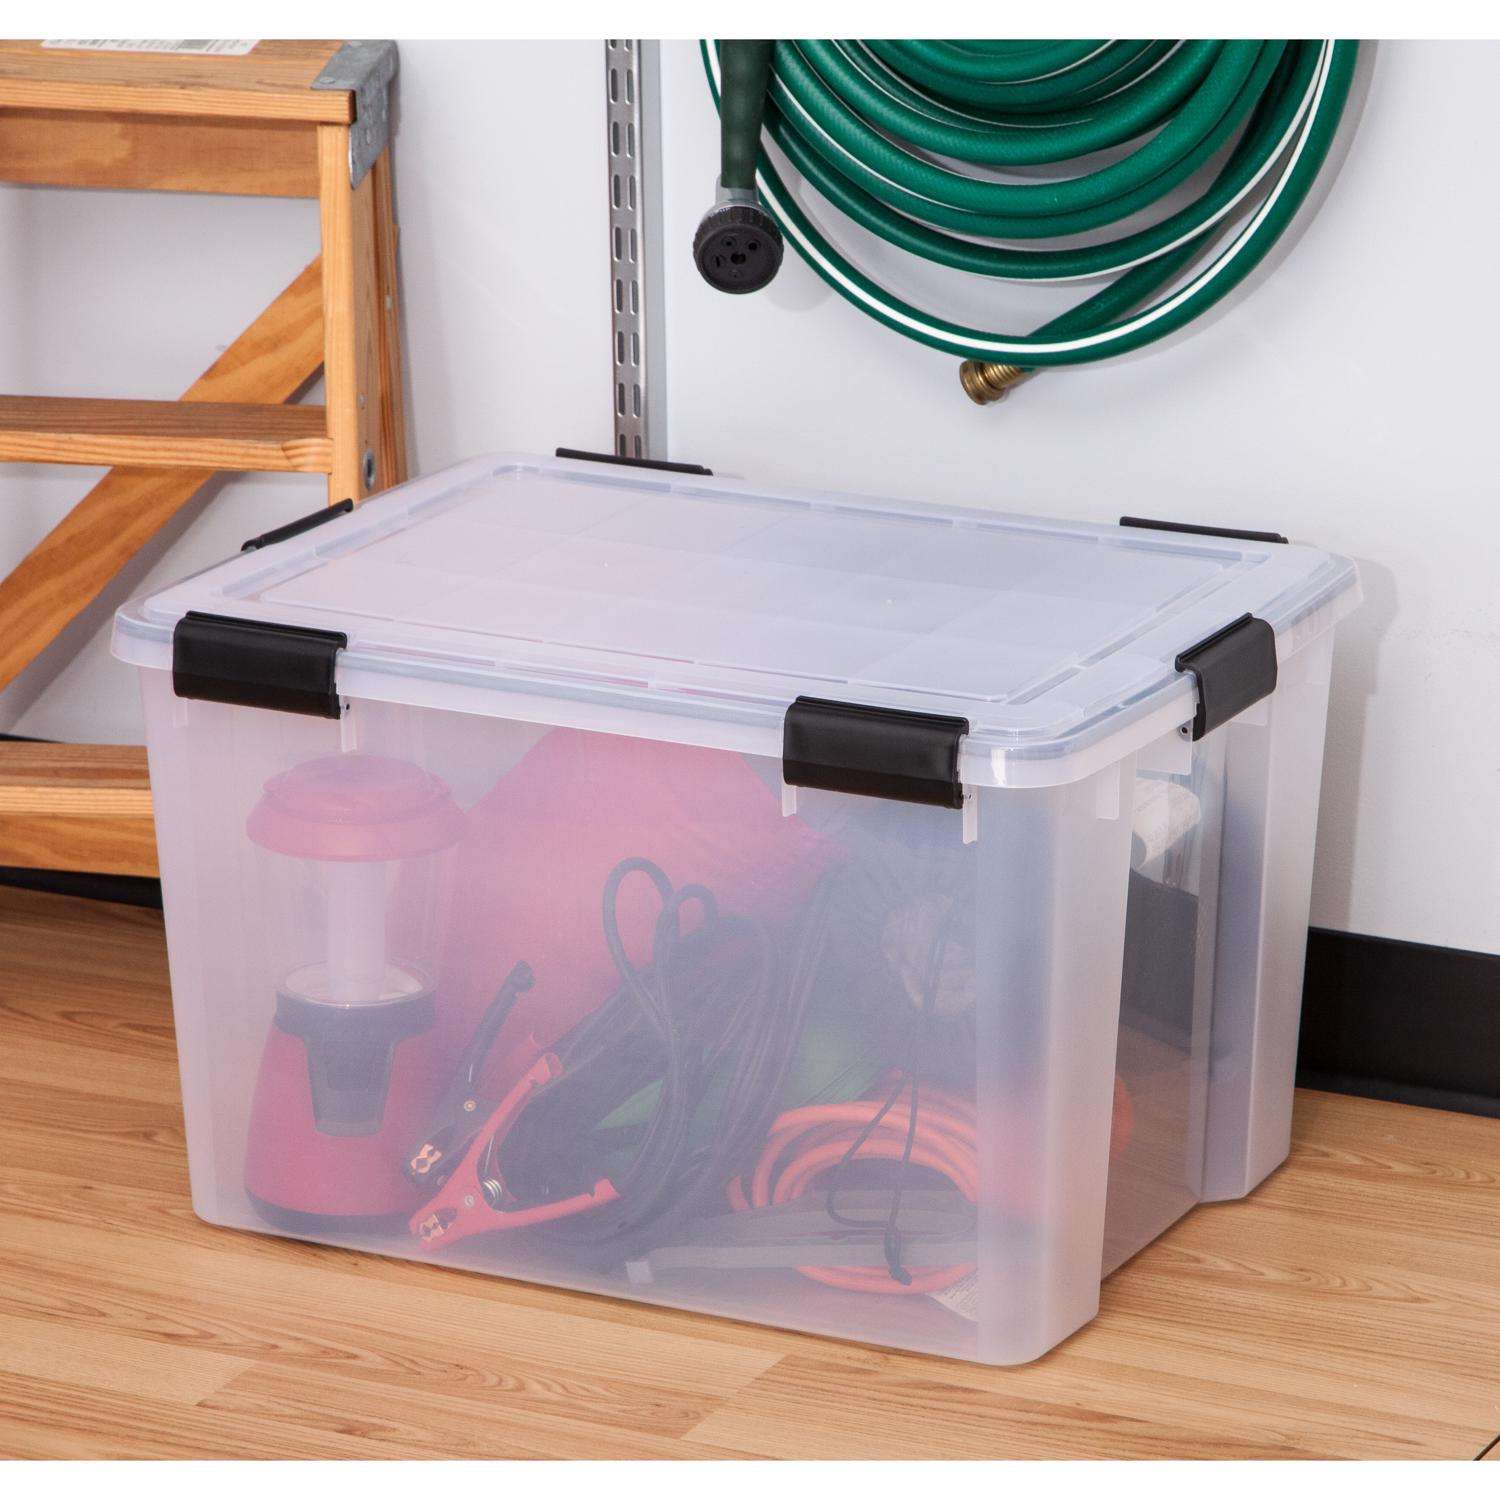 Iris 17-Quart Plastic Storage Box, Clear